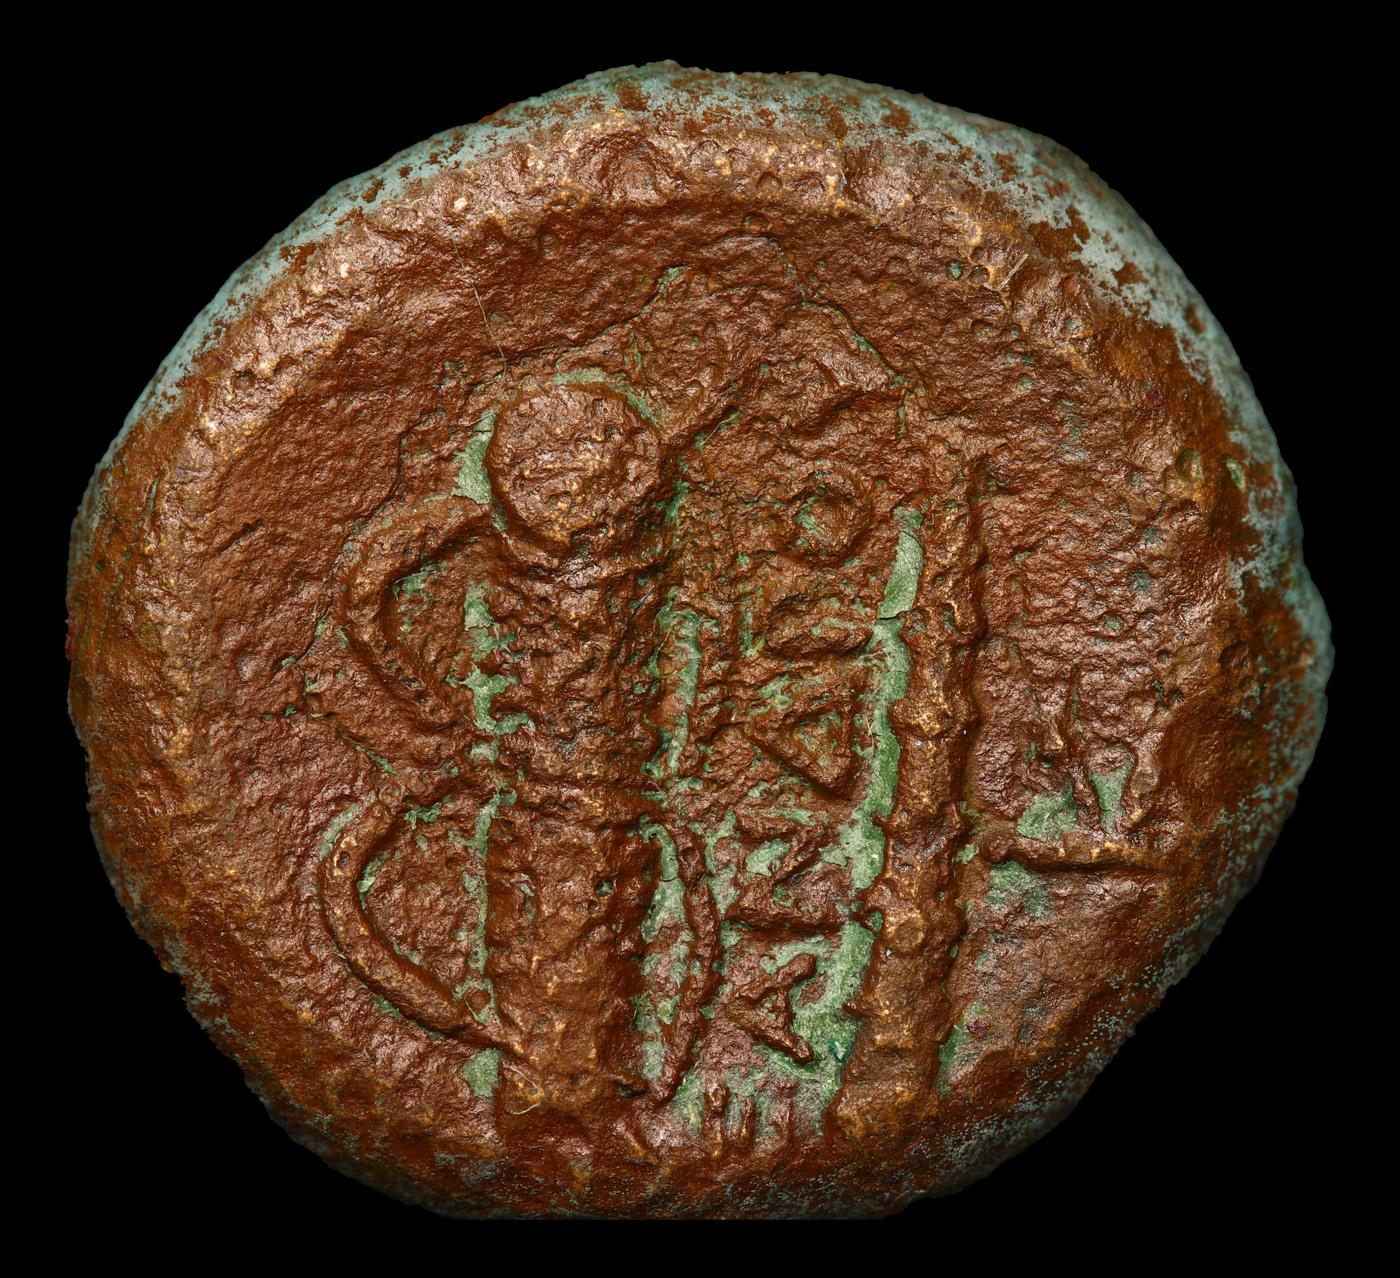 336-323 BC Ancient Greek Coin Macedonia Alexander The Great AE 18mm 4.6g Sear 6739v Grades vf